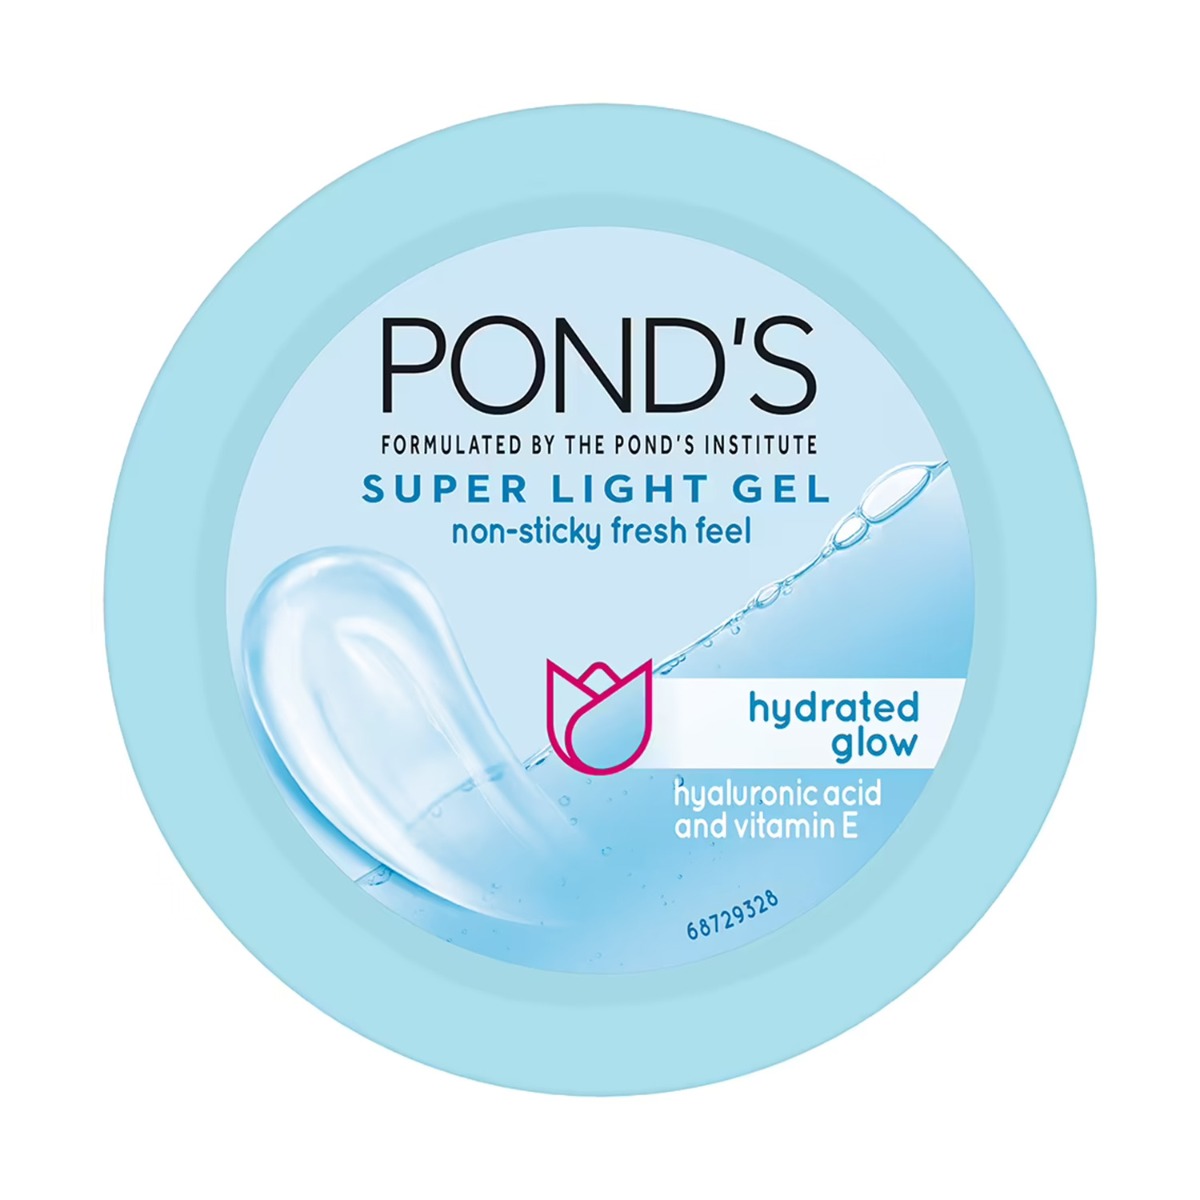 POND'S Super Light Gel Oil Free Moisturiser With Hyaluronic Acid + Vitamin E, 50ml